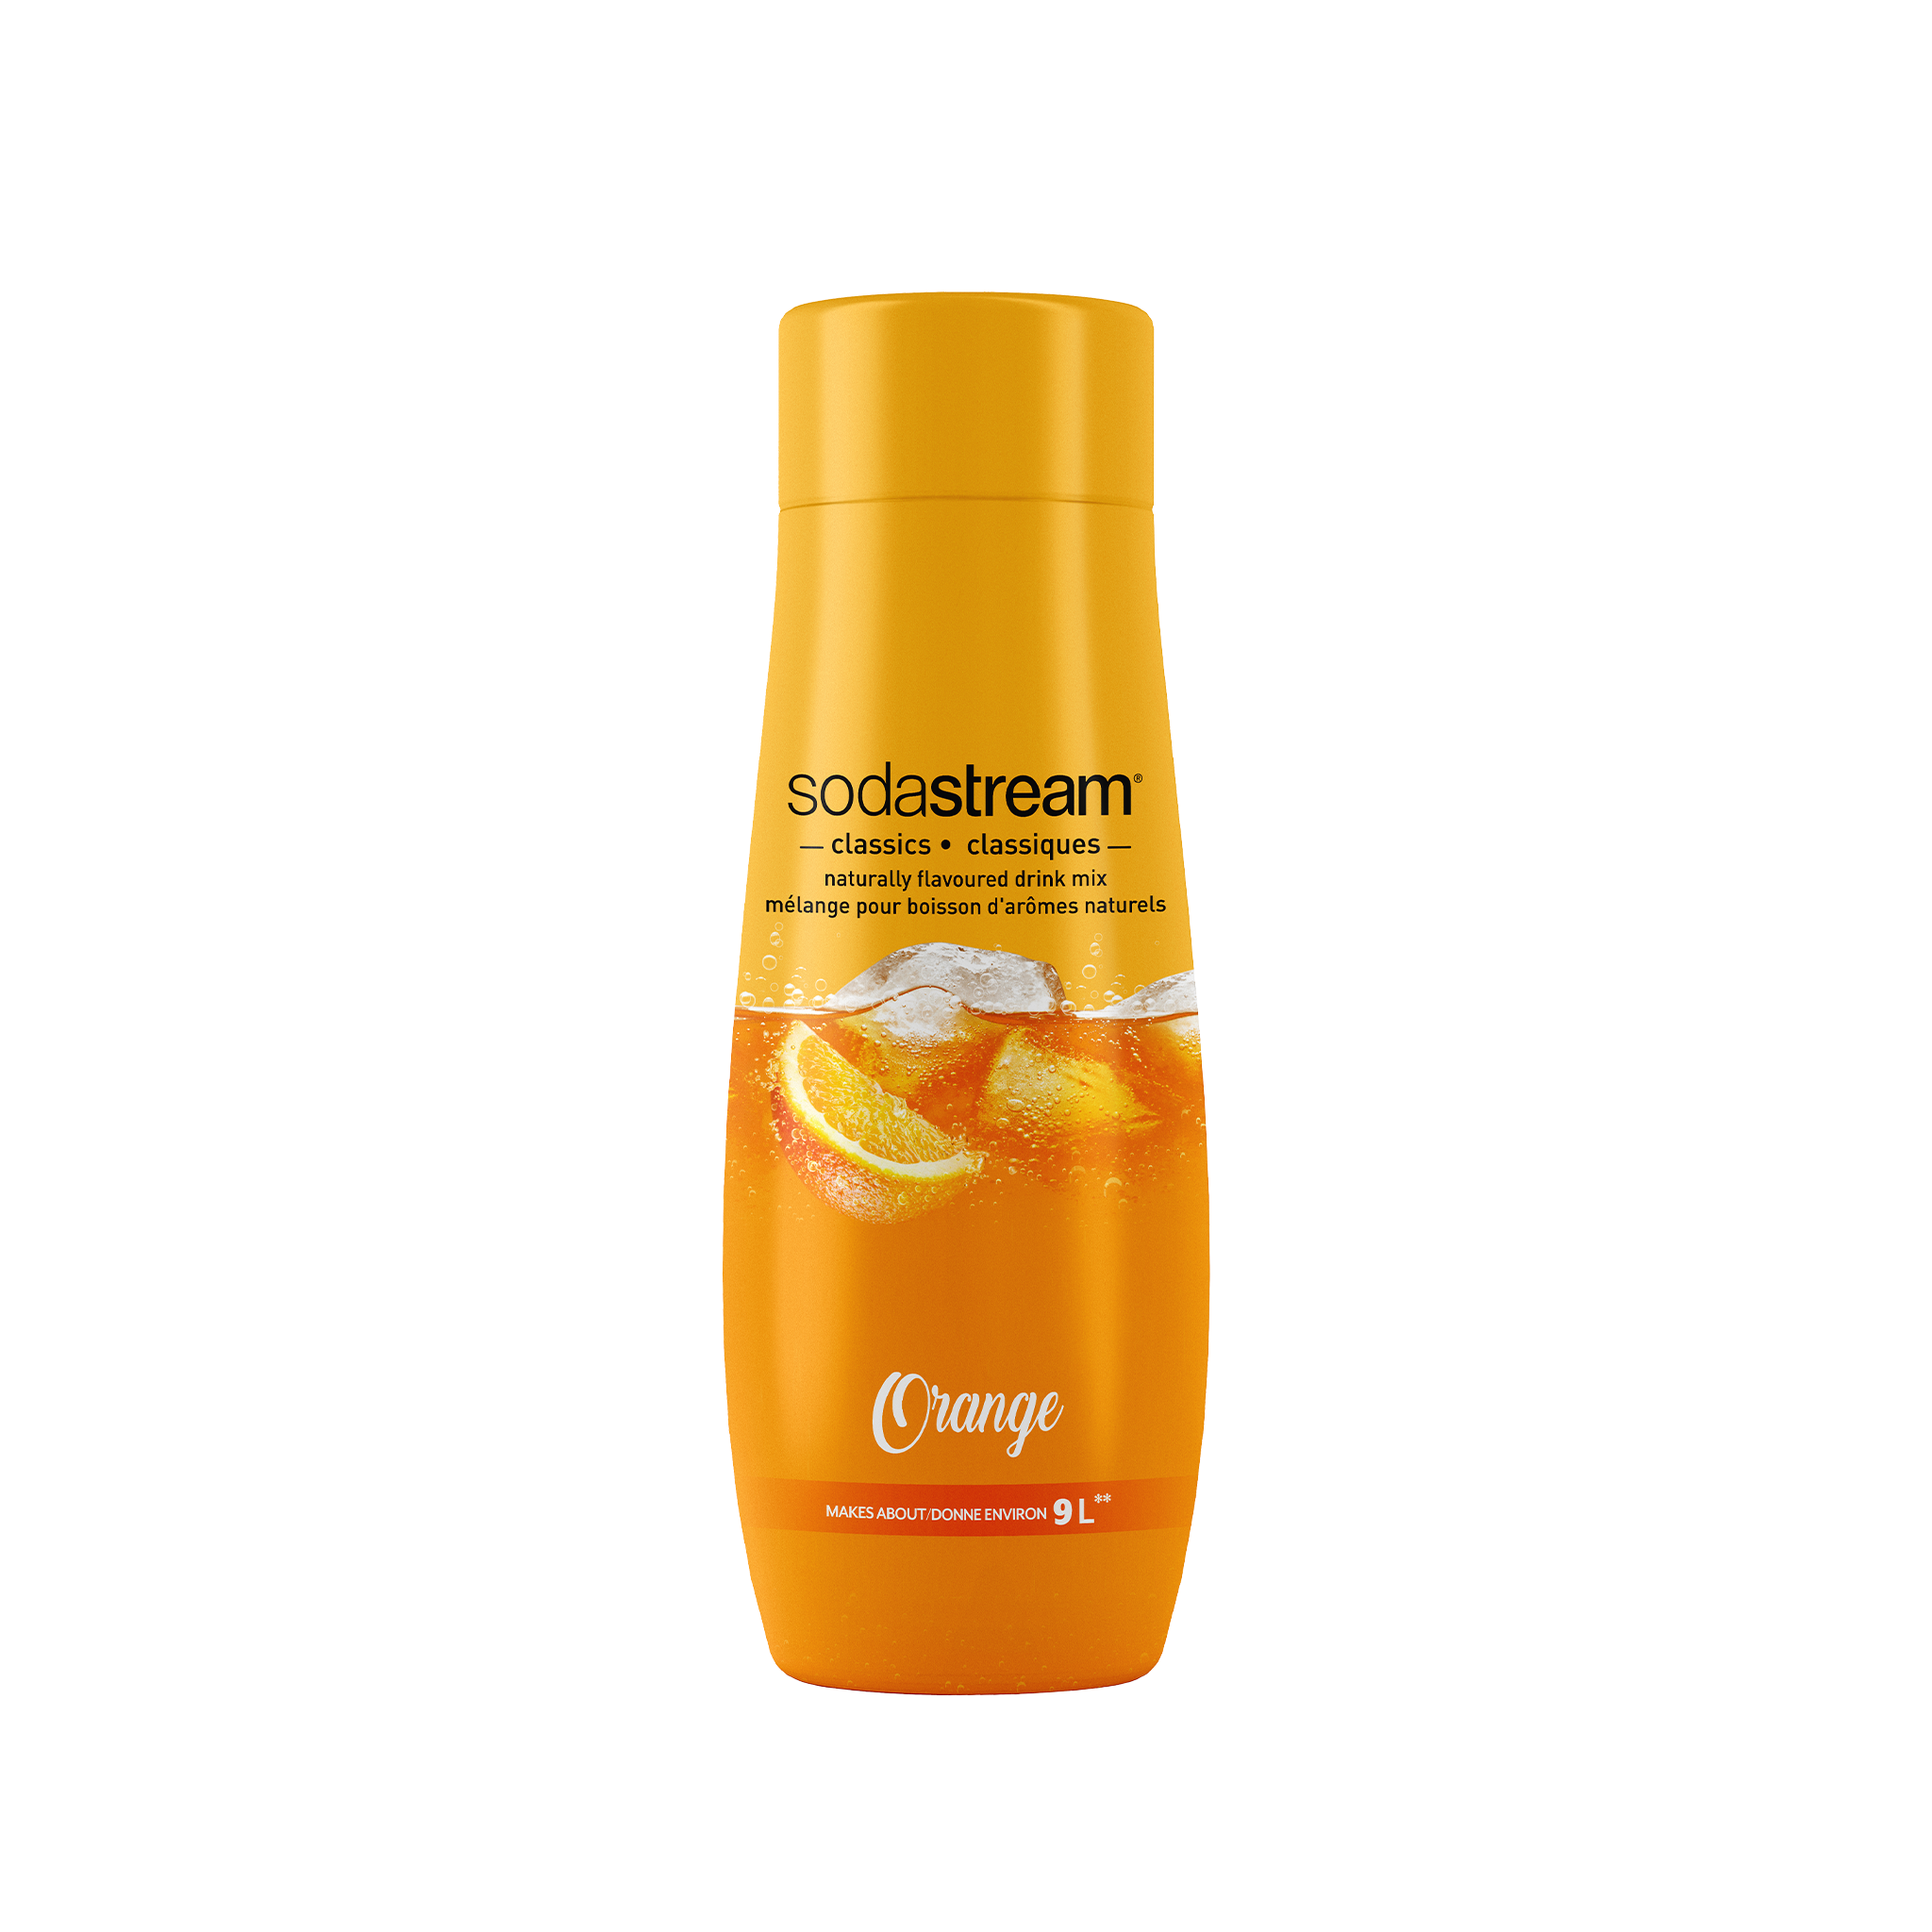 Classique - Orange sodastream